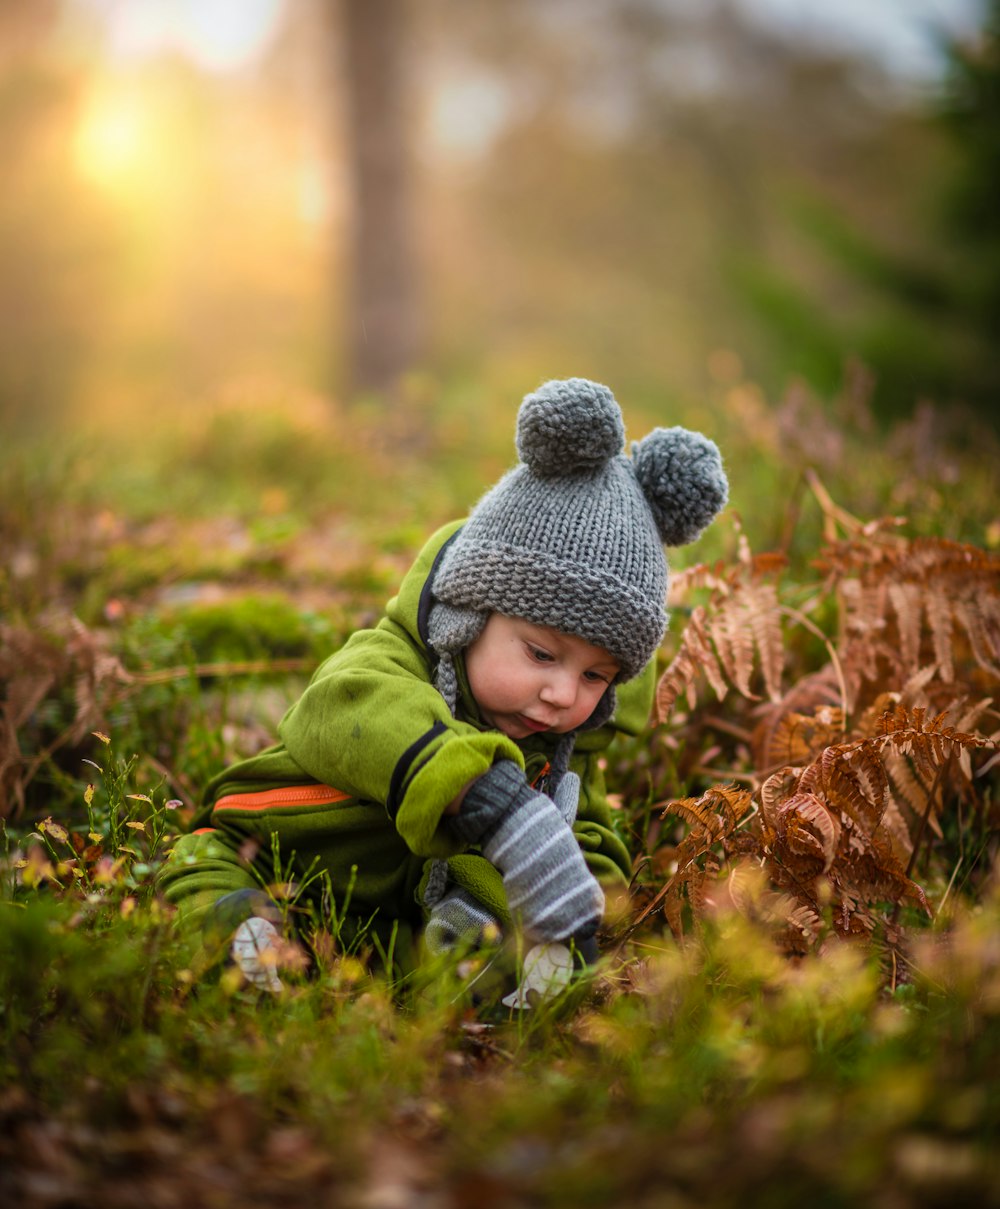 緑の芝生の上の赤ちゃんのセレクティブフォーカス写真